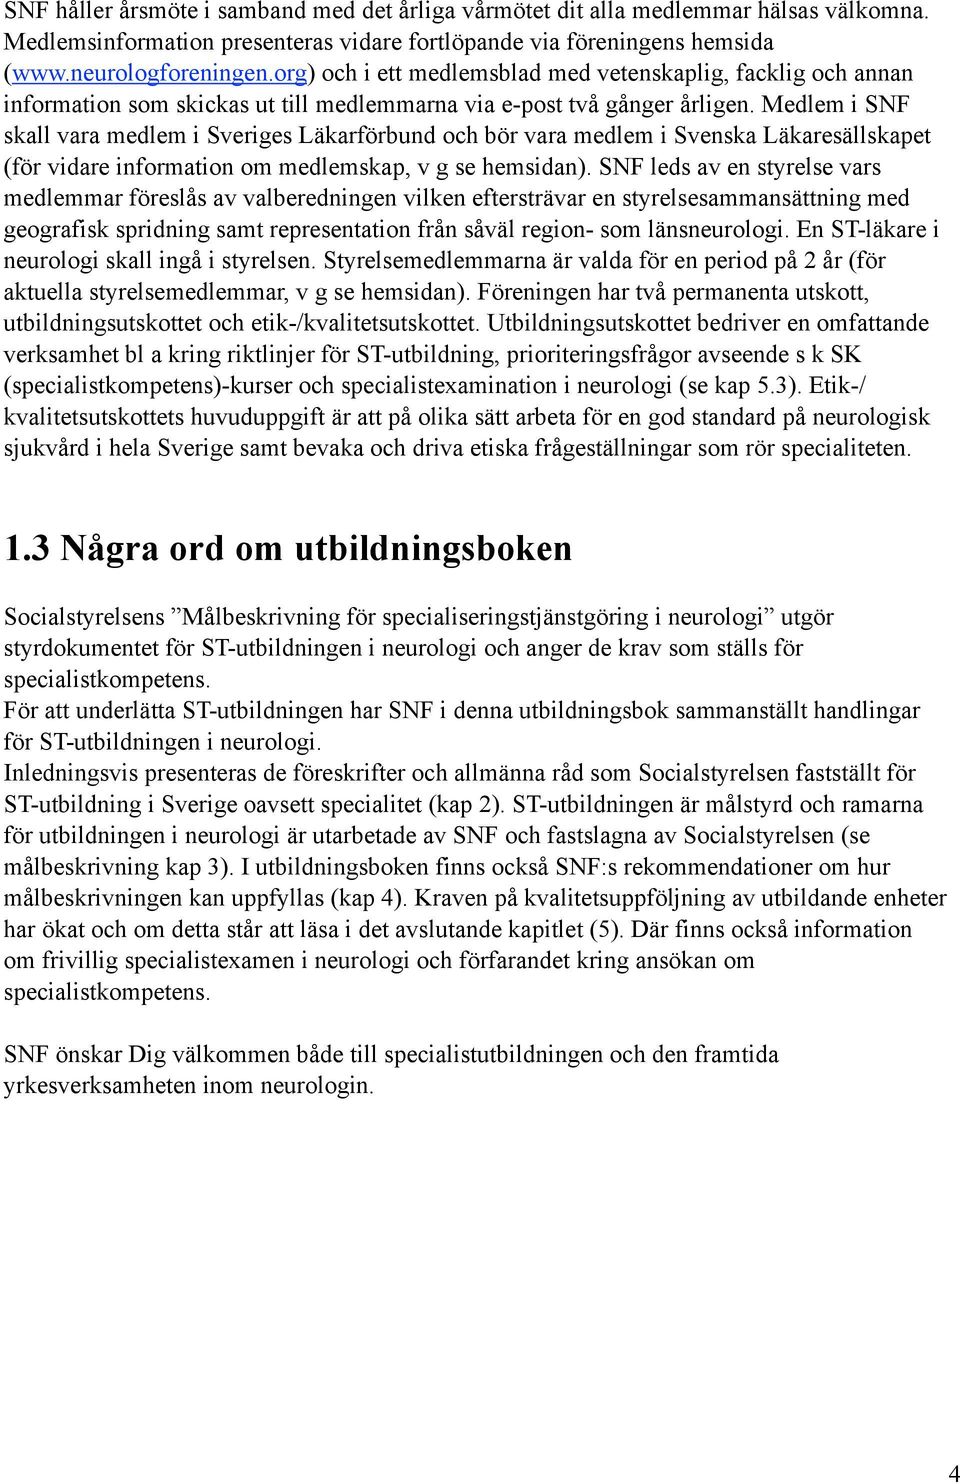 Medlem i SNF skall vara medlem i Sveriges Läkarförbund och bör vara medlem i Svenska Läkaresällskapet (för vidare information om medlemskap, v g se hemsidan).